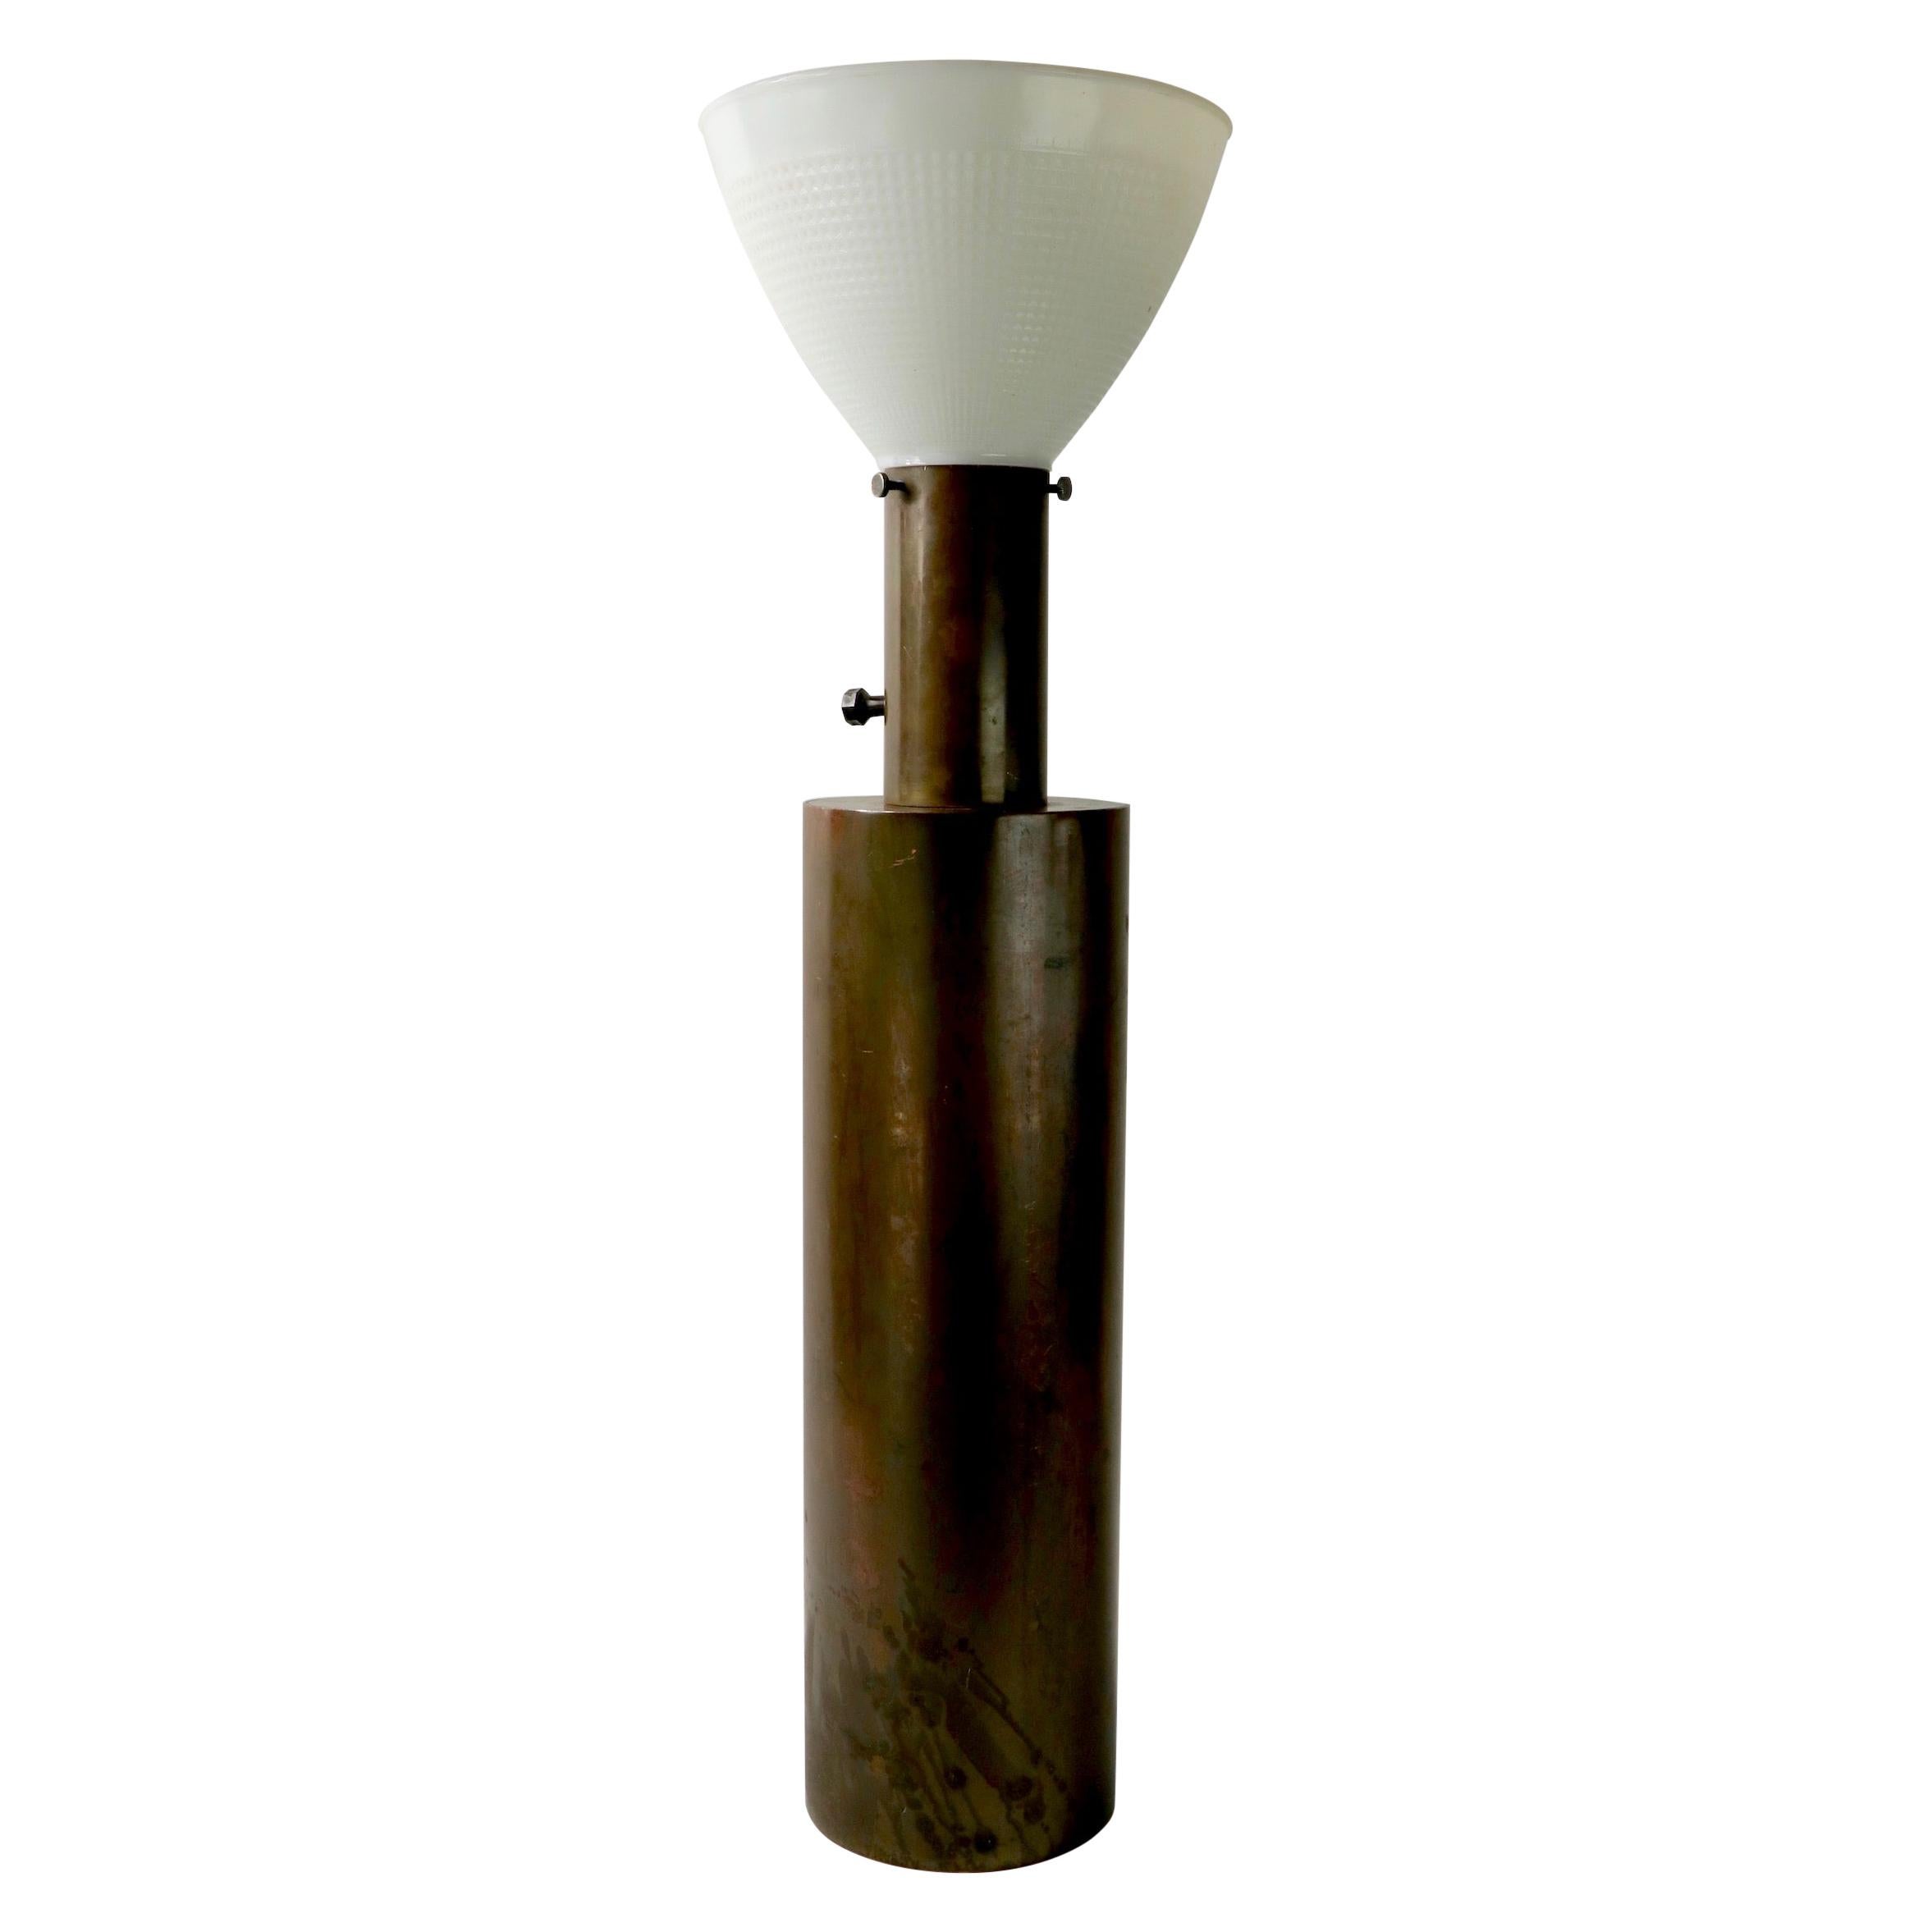 Zylindrische Messing Mid Century Tischlampe